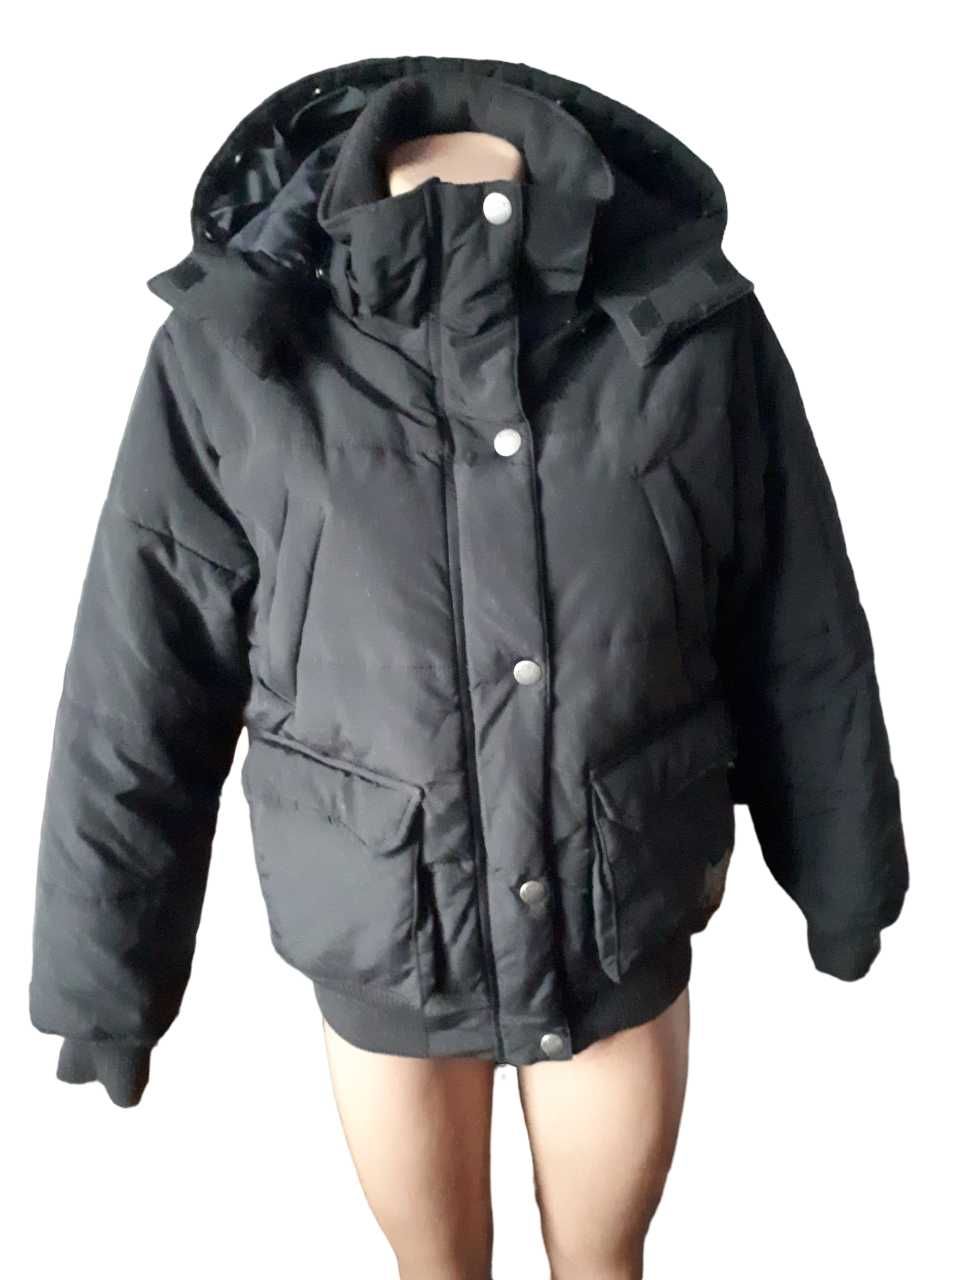 Зимняя курточка на мальчика рост 164